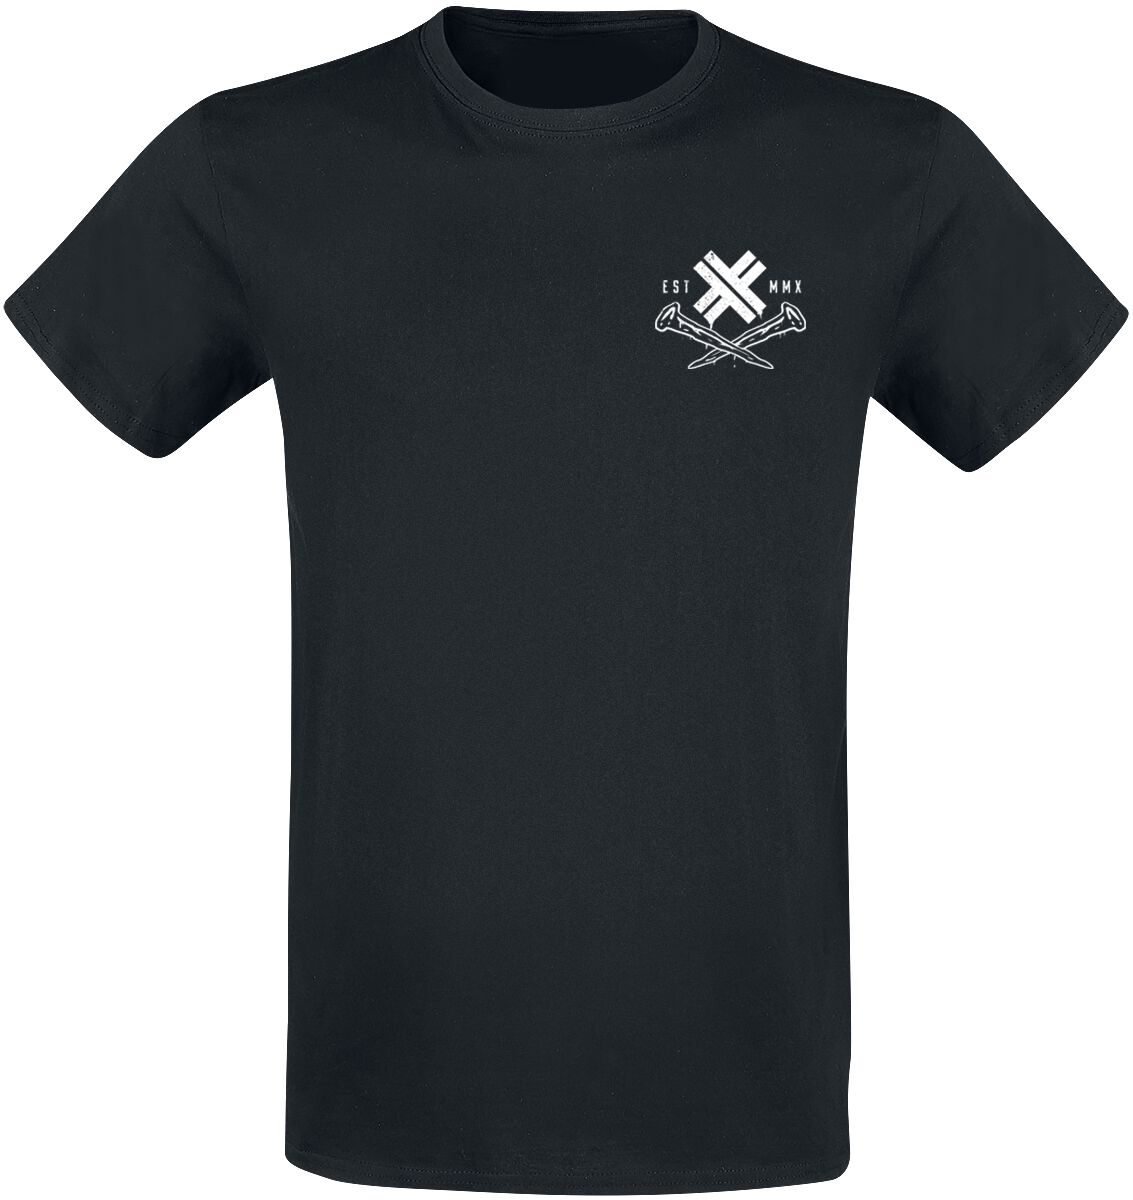 Electric Callboy T-Shirt - Dark Horse - S bis 3XL - für Männer - Größe 3XL - schwarz  - Lizenziertes Merchandise!